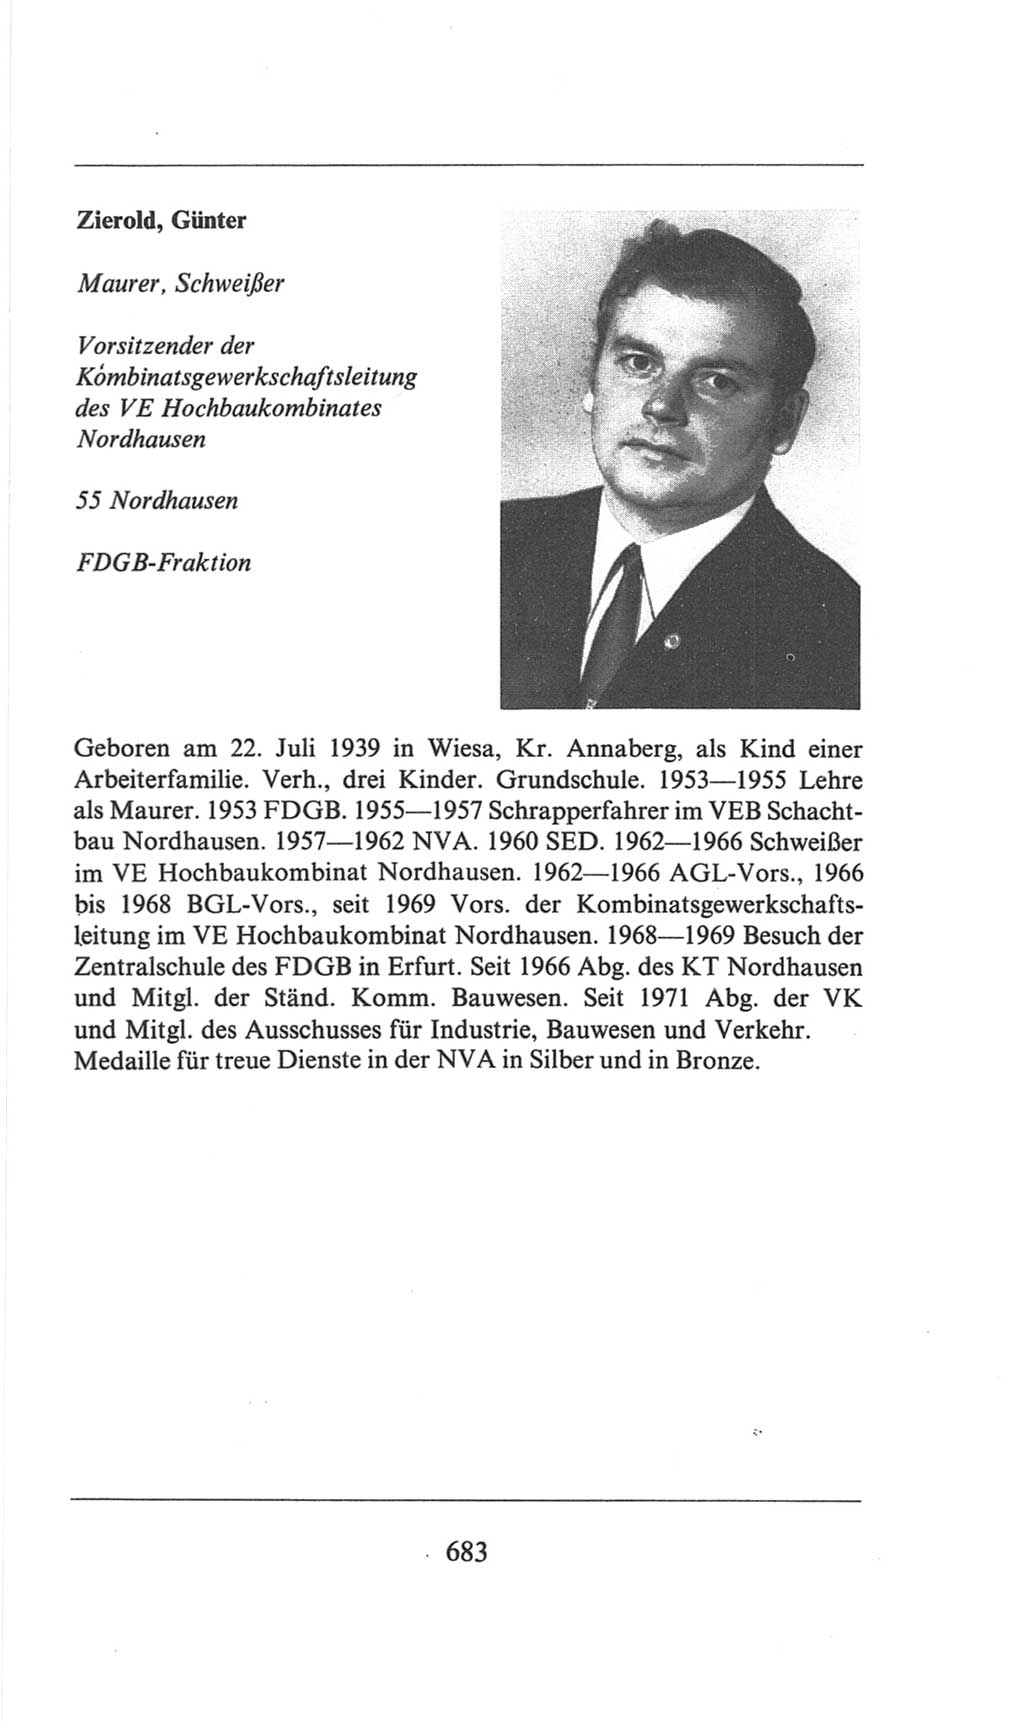 Volkskammer (VK) der Deutschen Demokratischen Republik (DDR), 6. Wahlperiode 1971-1976, Seite 683 (VK. DDR 6. WP. 1971-1976, S. 683)